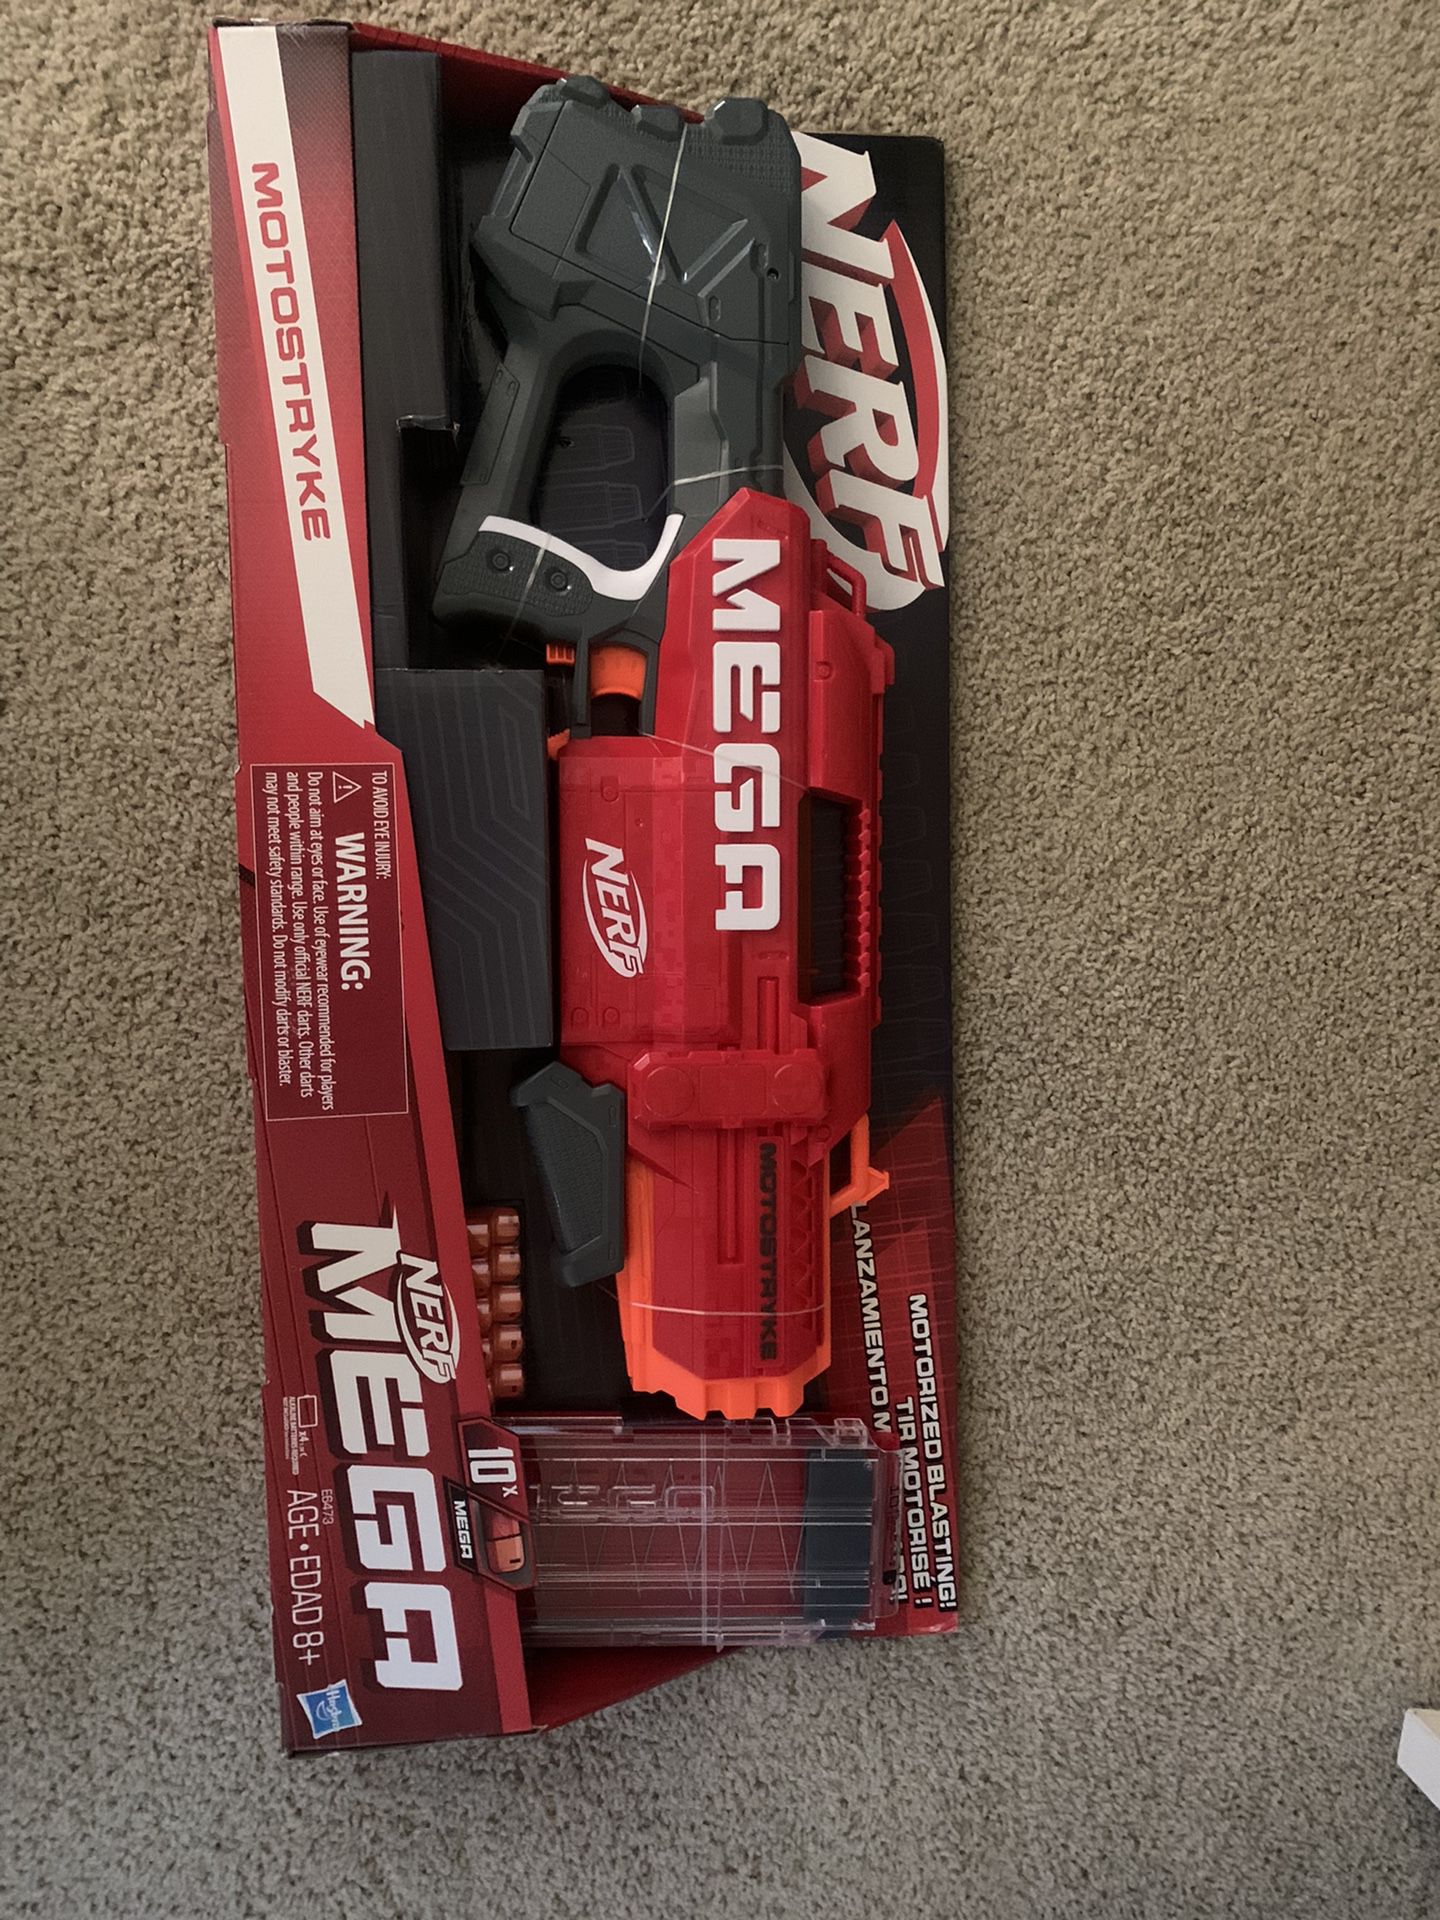 Nerf Megastryke Nerf Gun   Brand New 